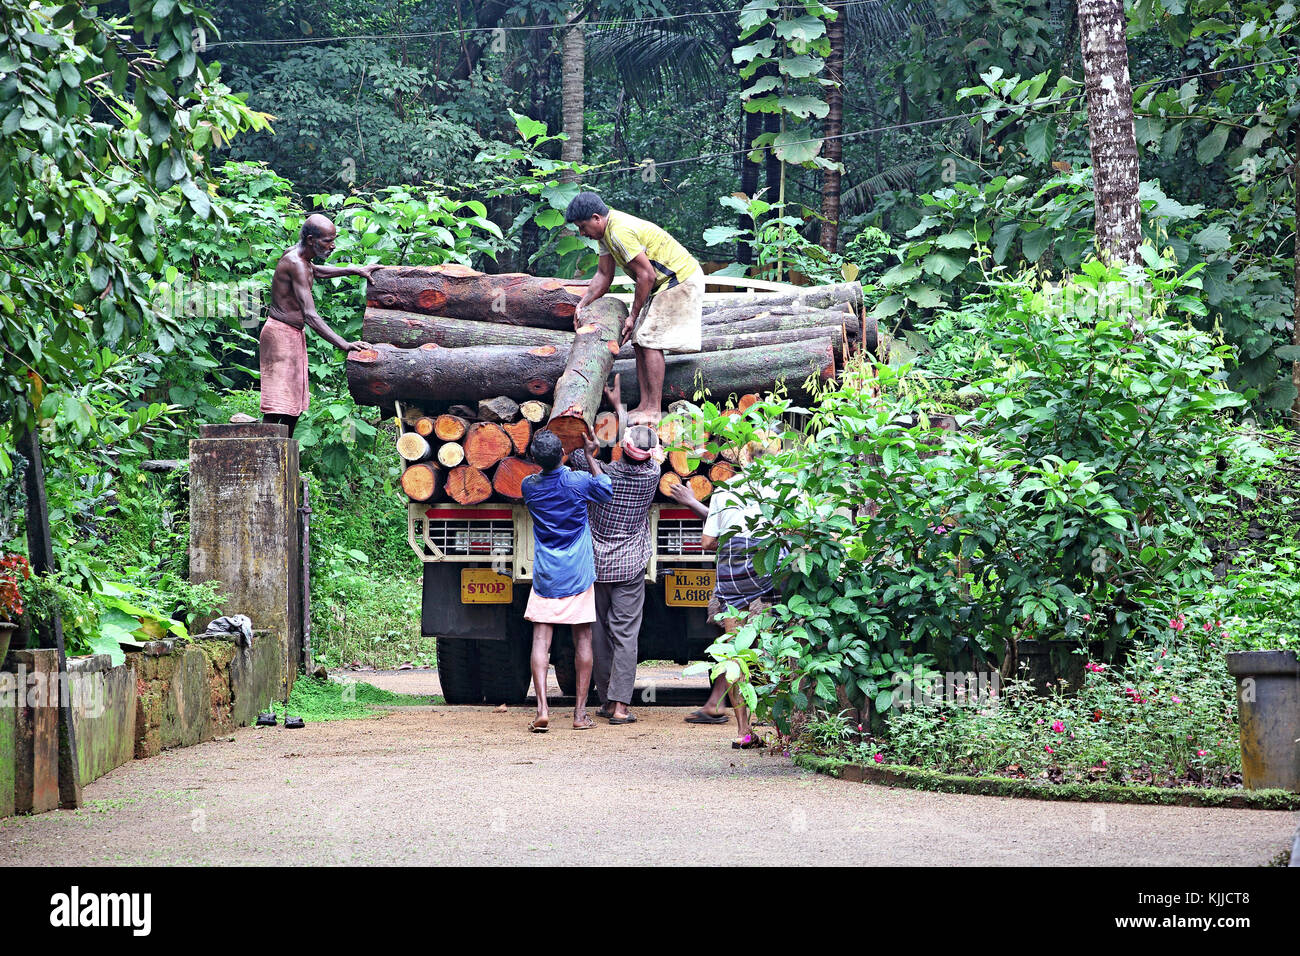 Arbeitnehmer last Baum Stämme der Bäume auf einen Lkw für minischweine zu Sägen Fräsen für die weitere Verarbeitung bei Keerampara, Kerala, Indien. Stockfoto